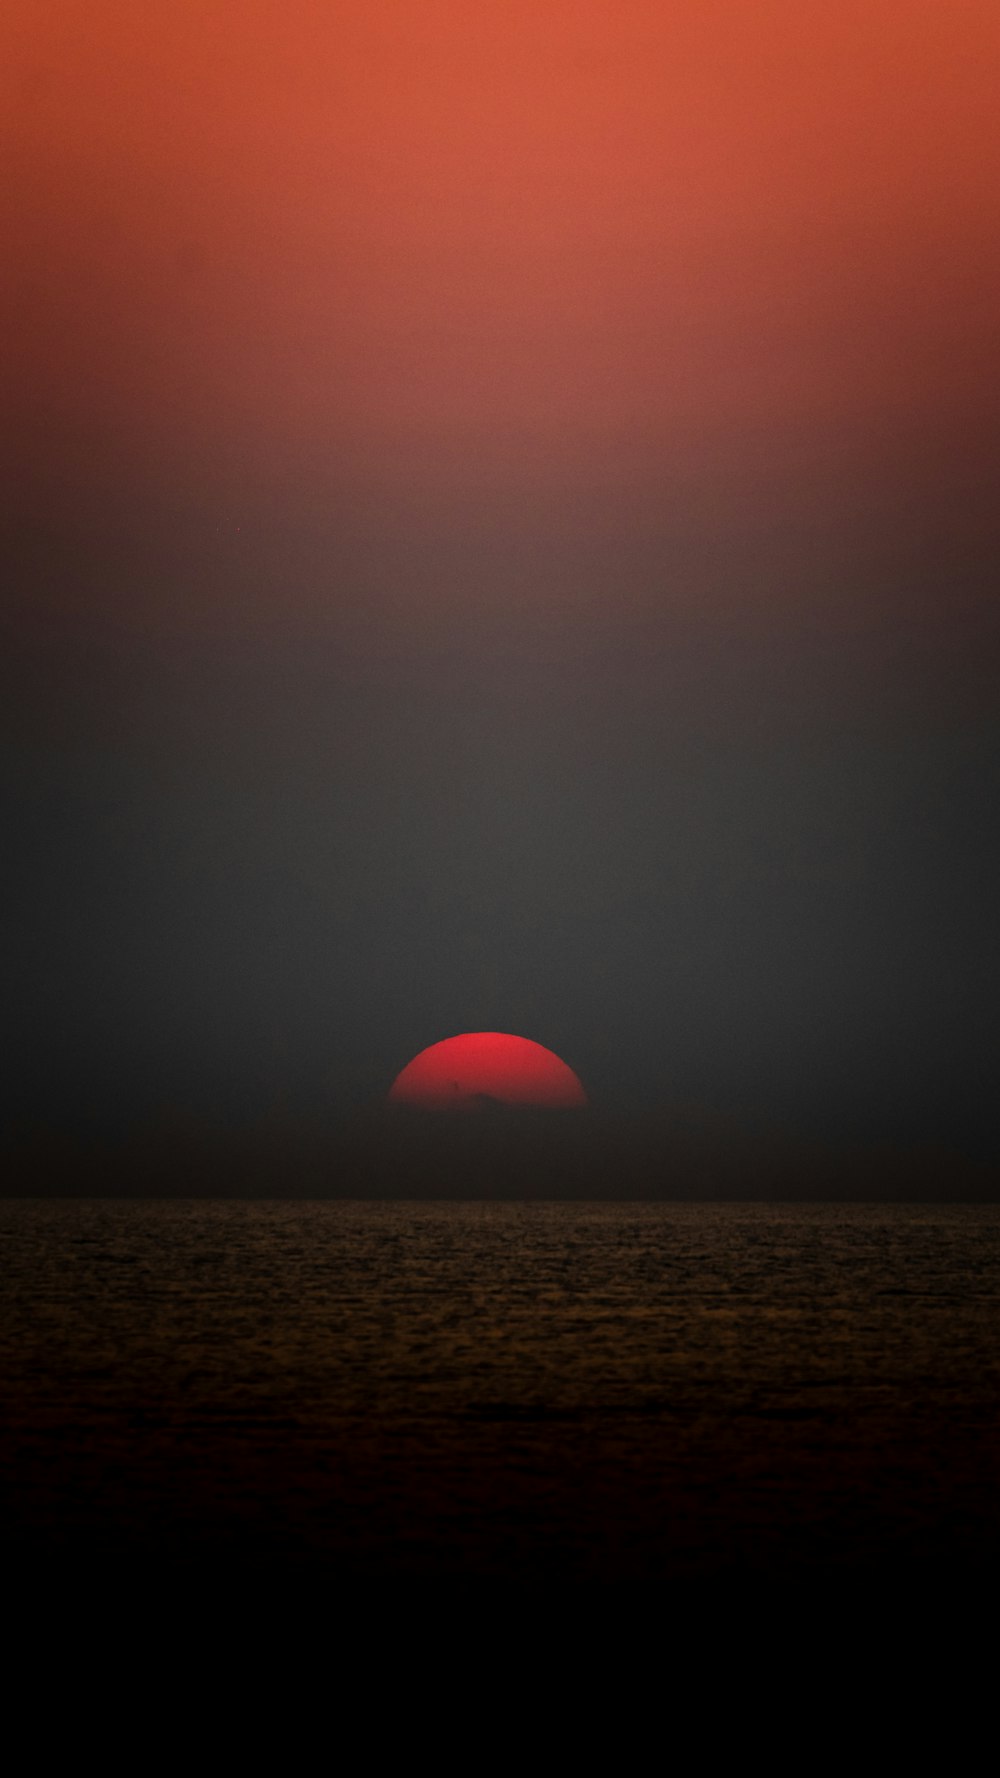 太陽が海の地平線に沈む